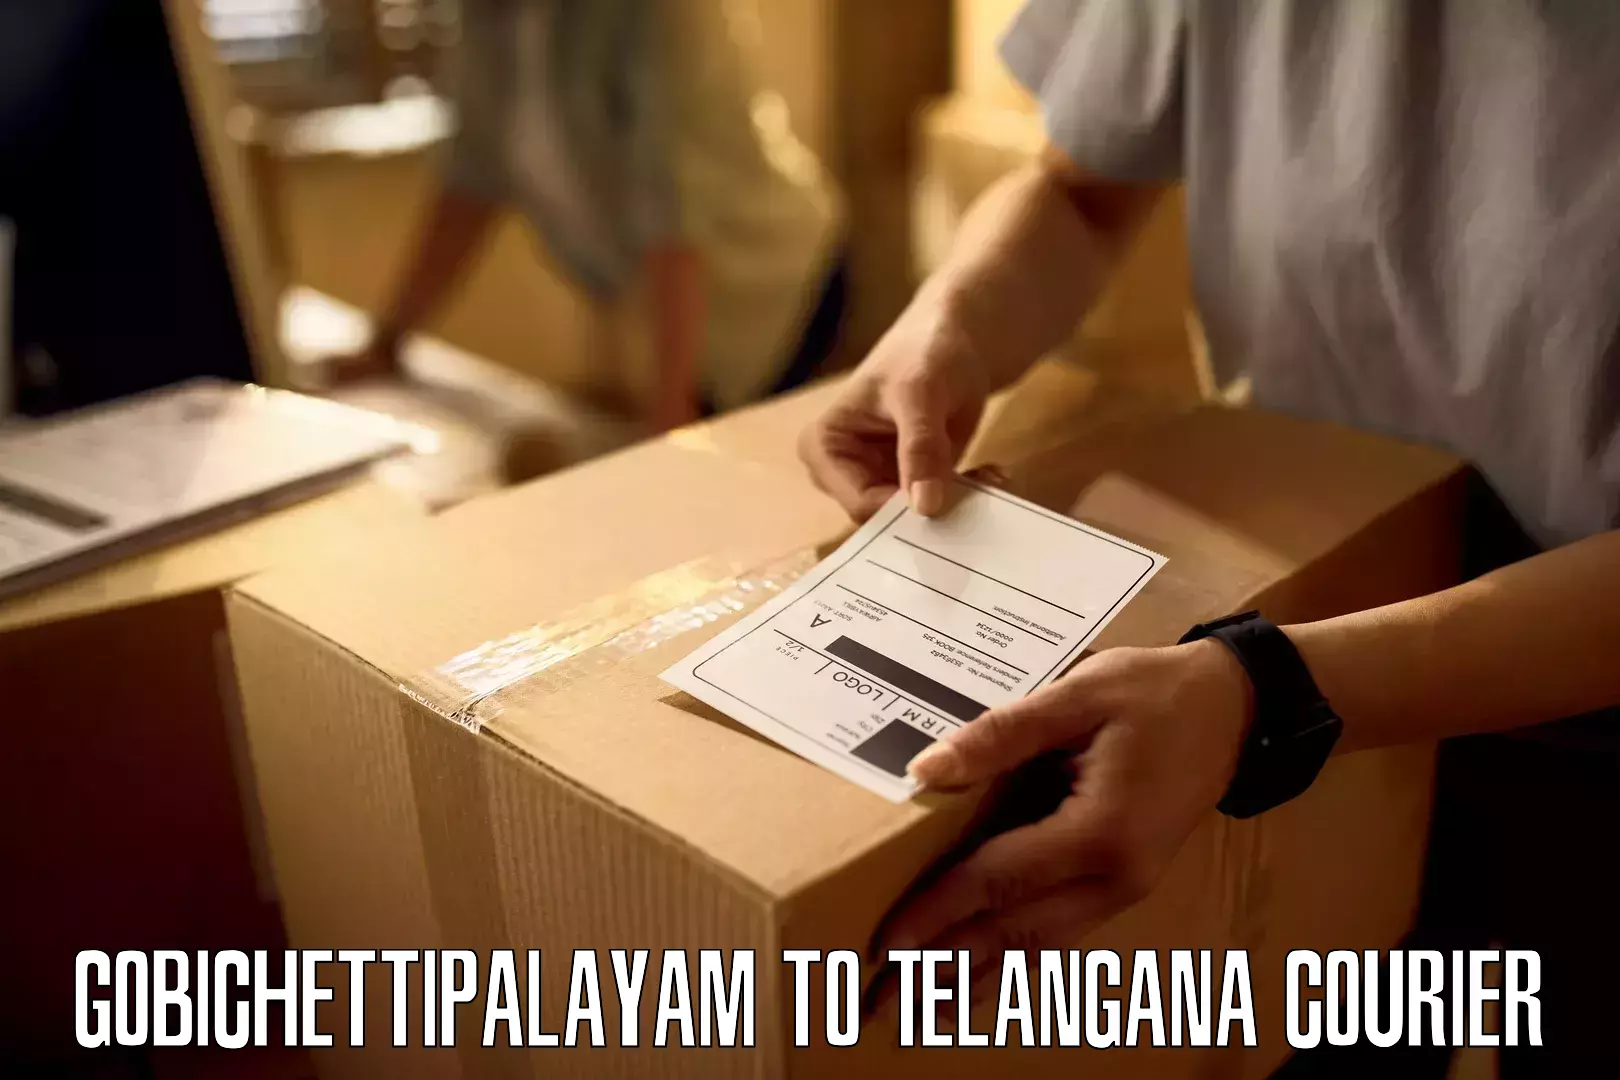 Customer-centric shipping Gobichettipalayam to Bhainsa